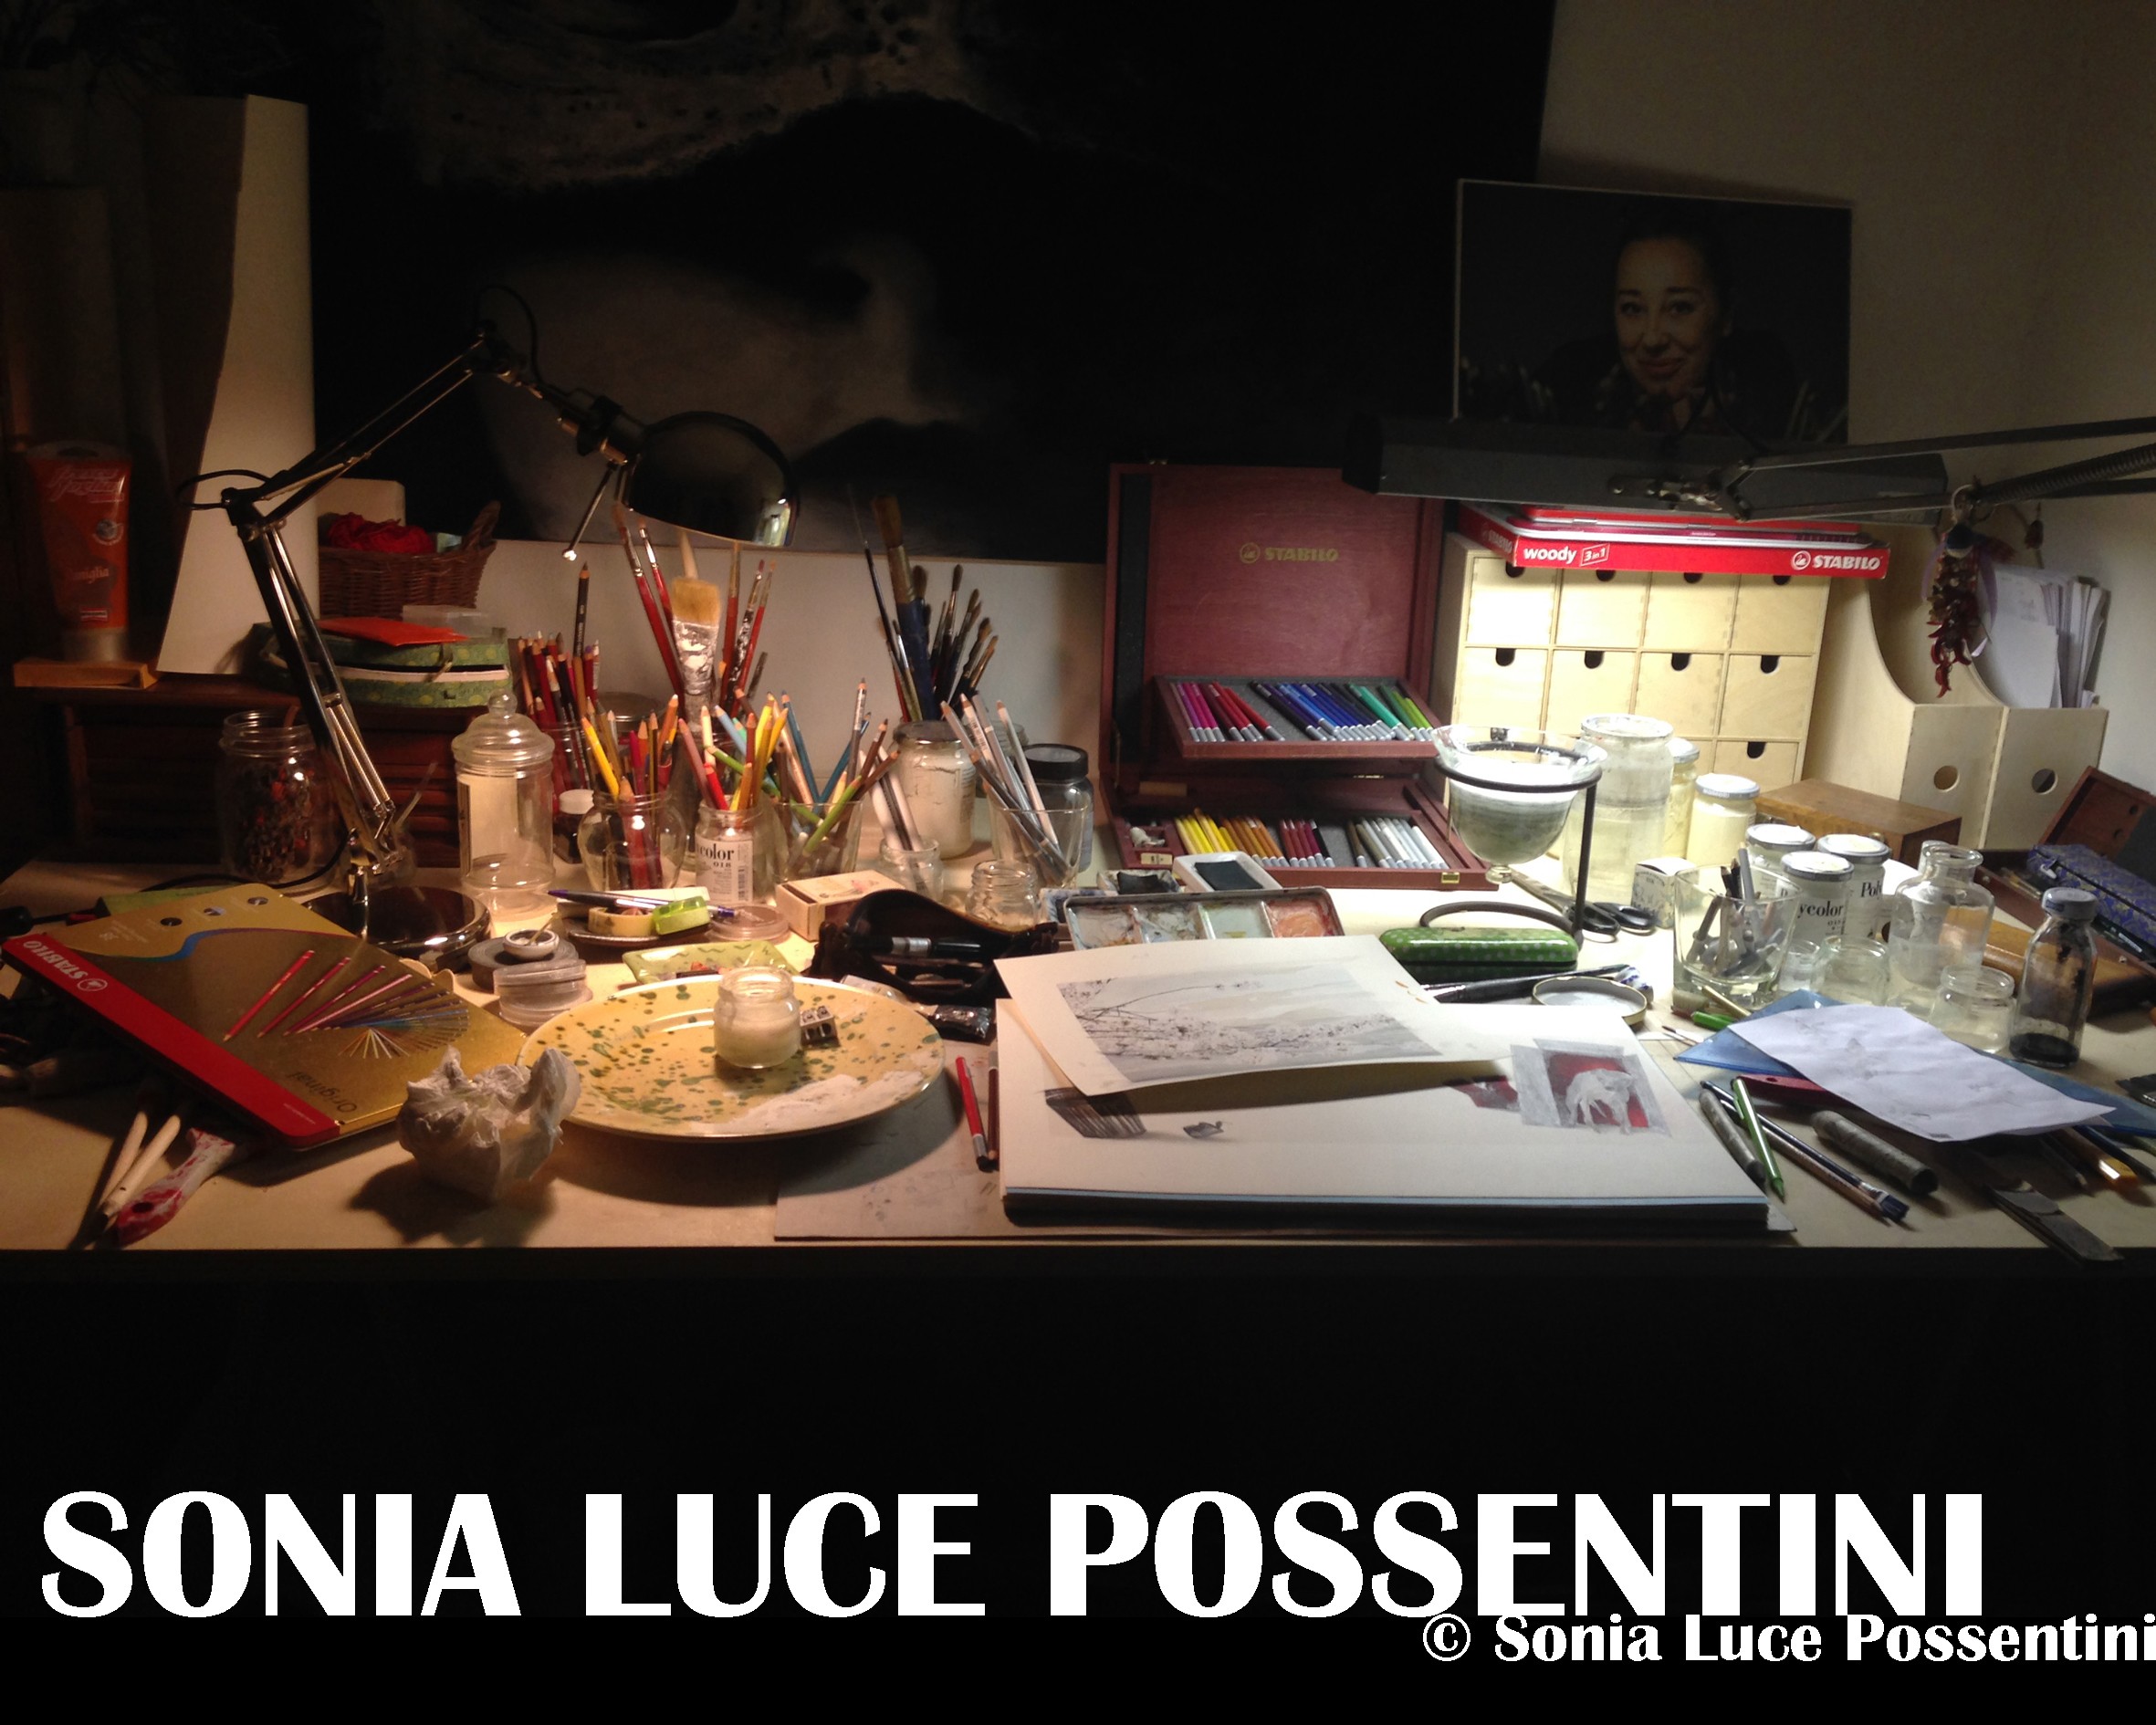 Sonia Luce Possentini